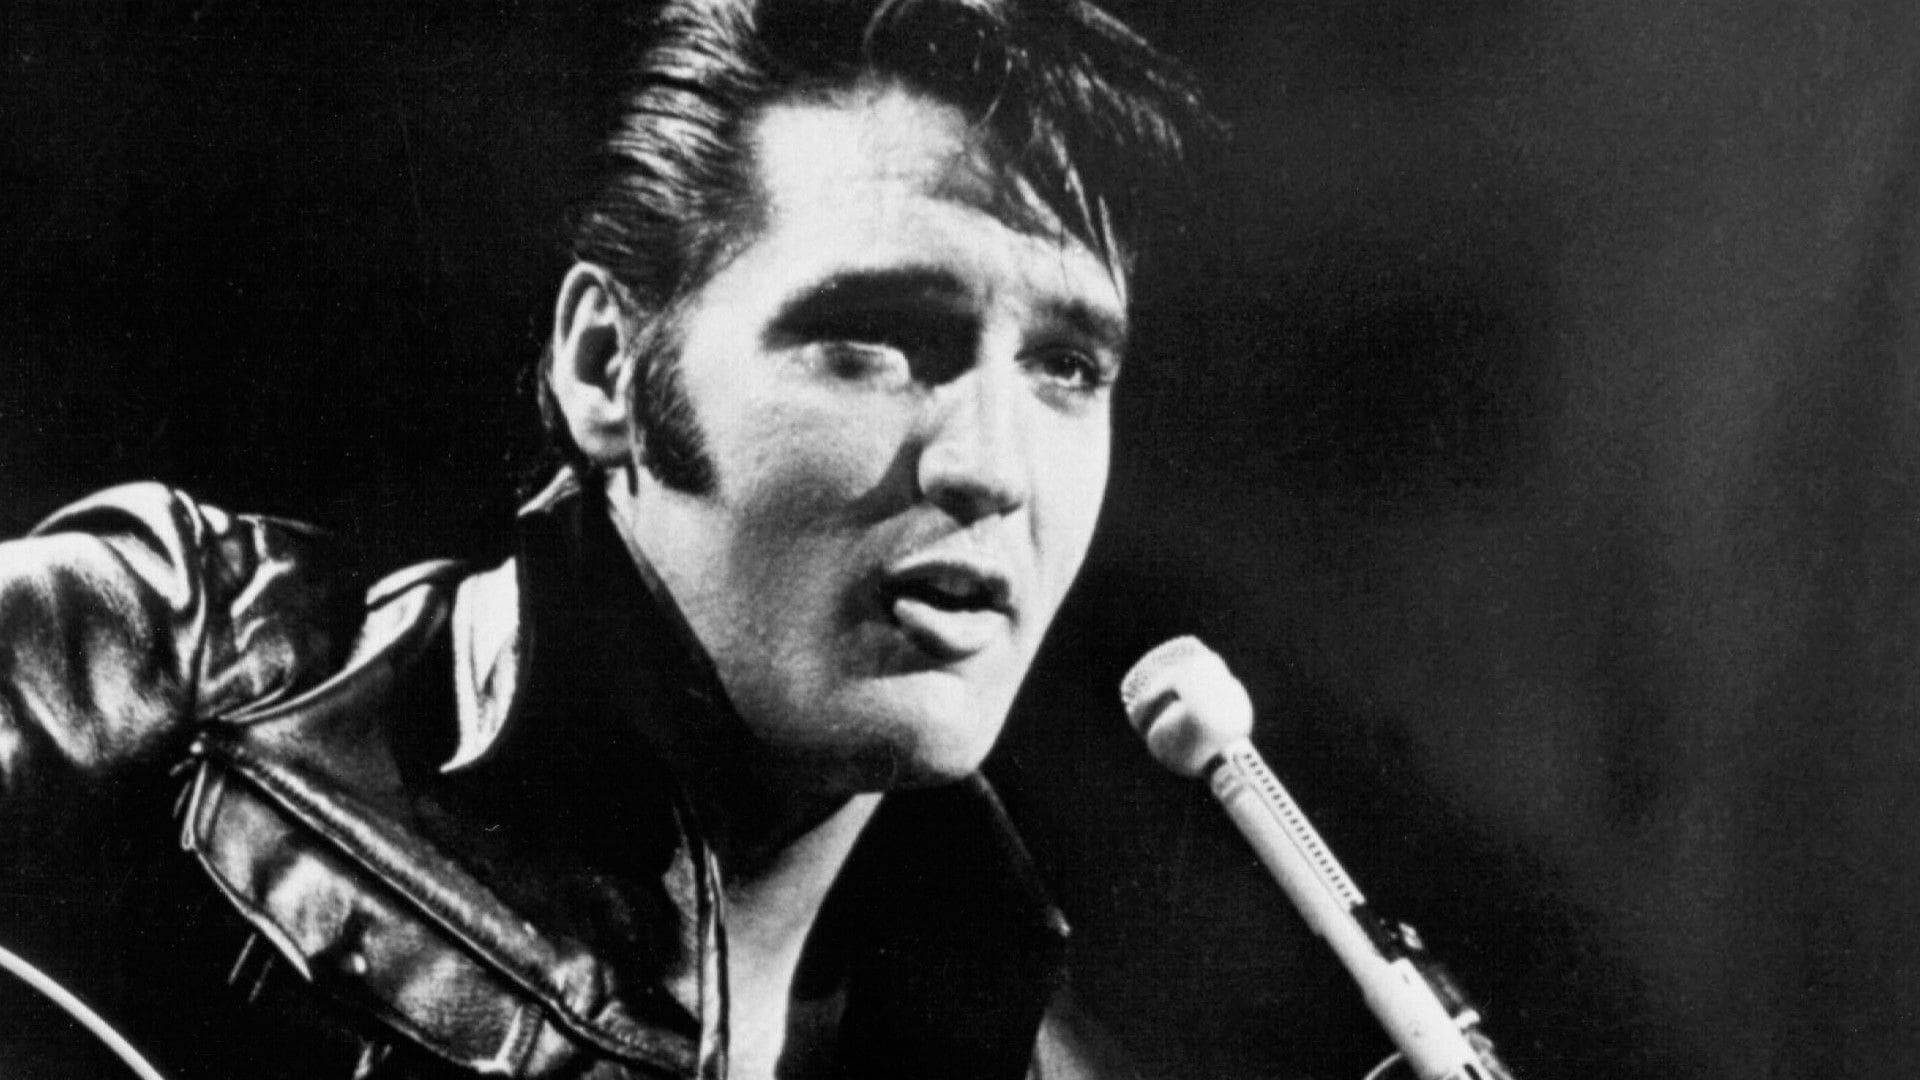 Classic Albums: Elvis Presley backdrop